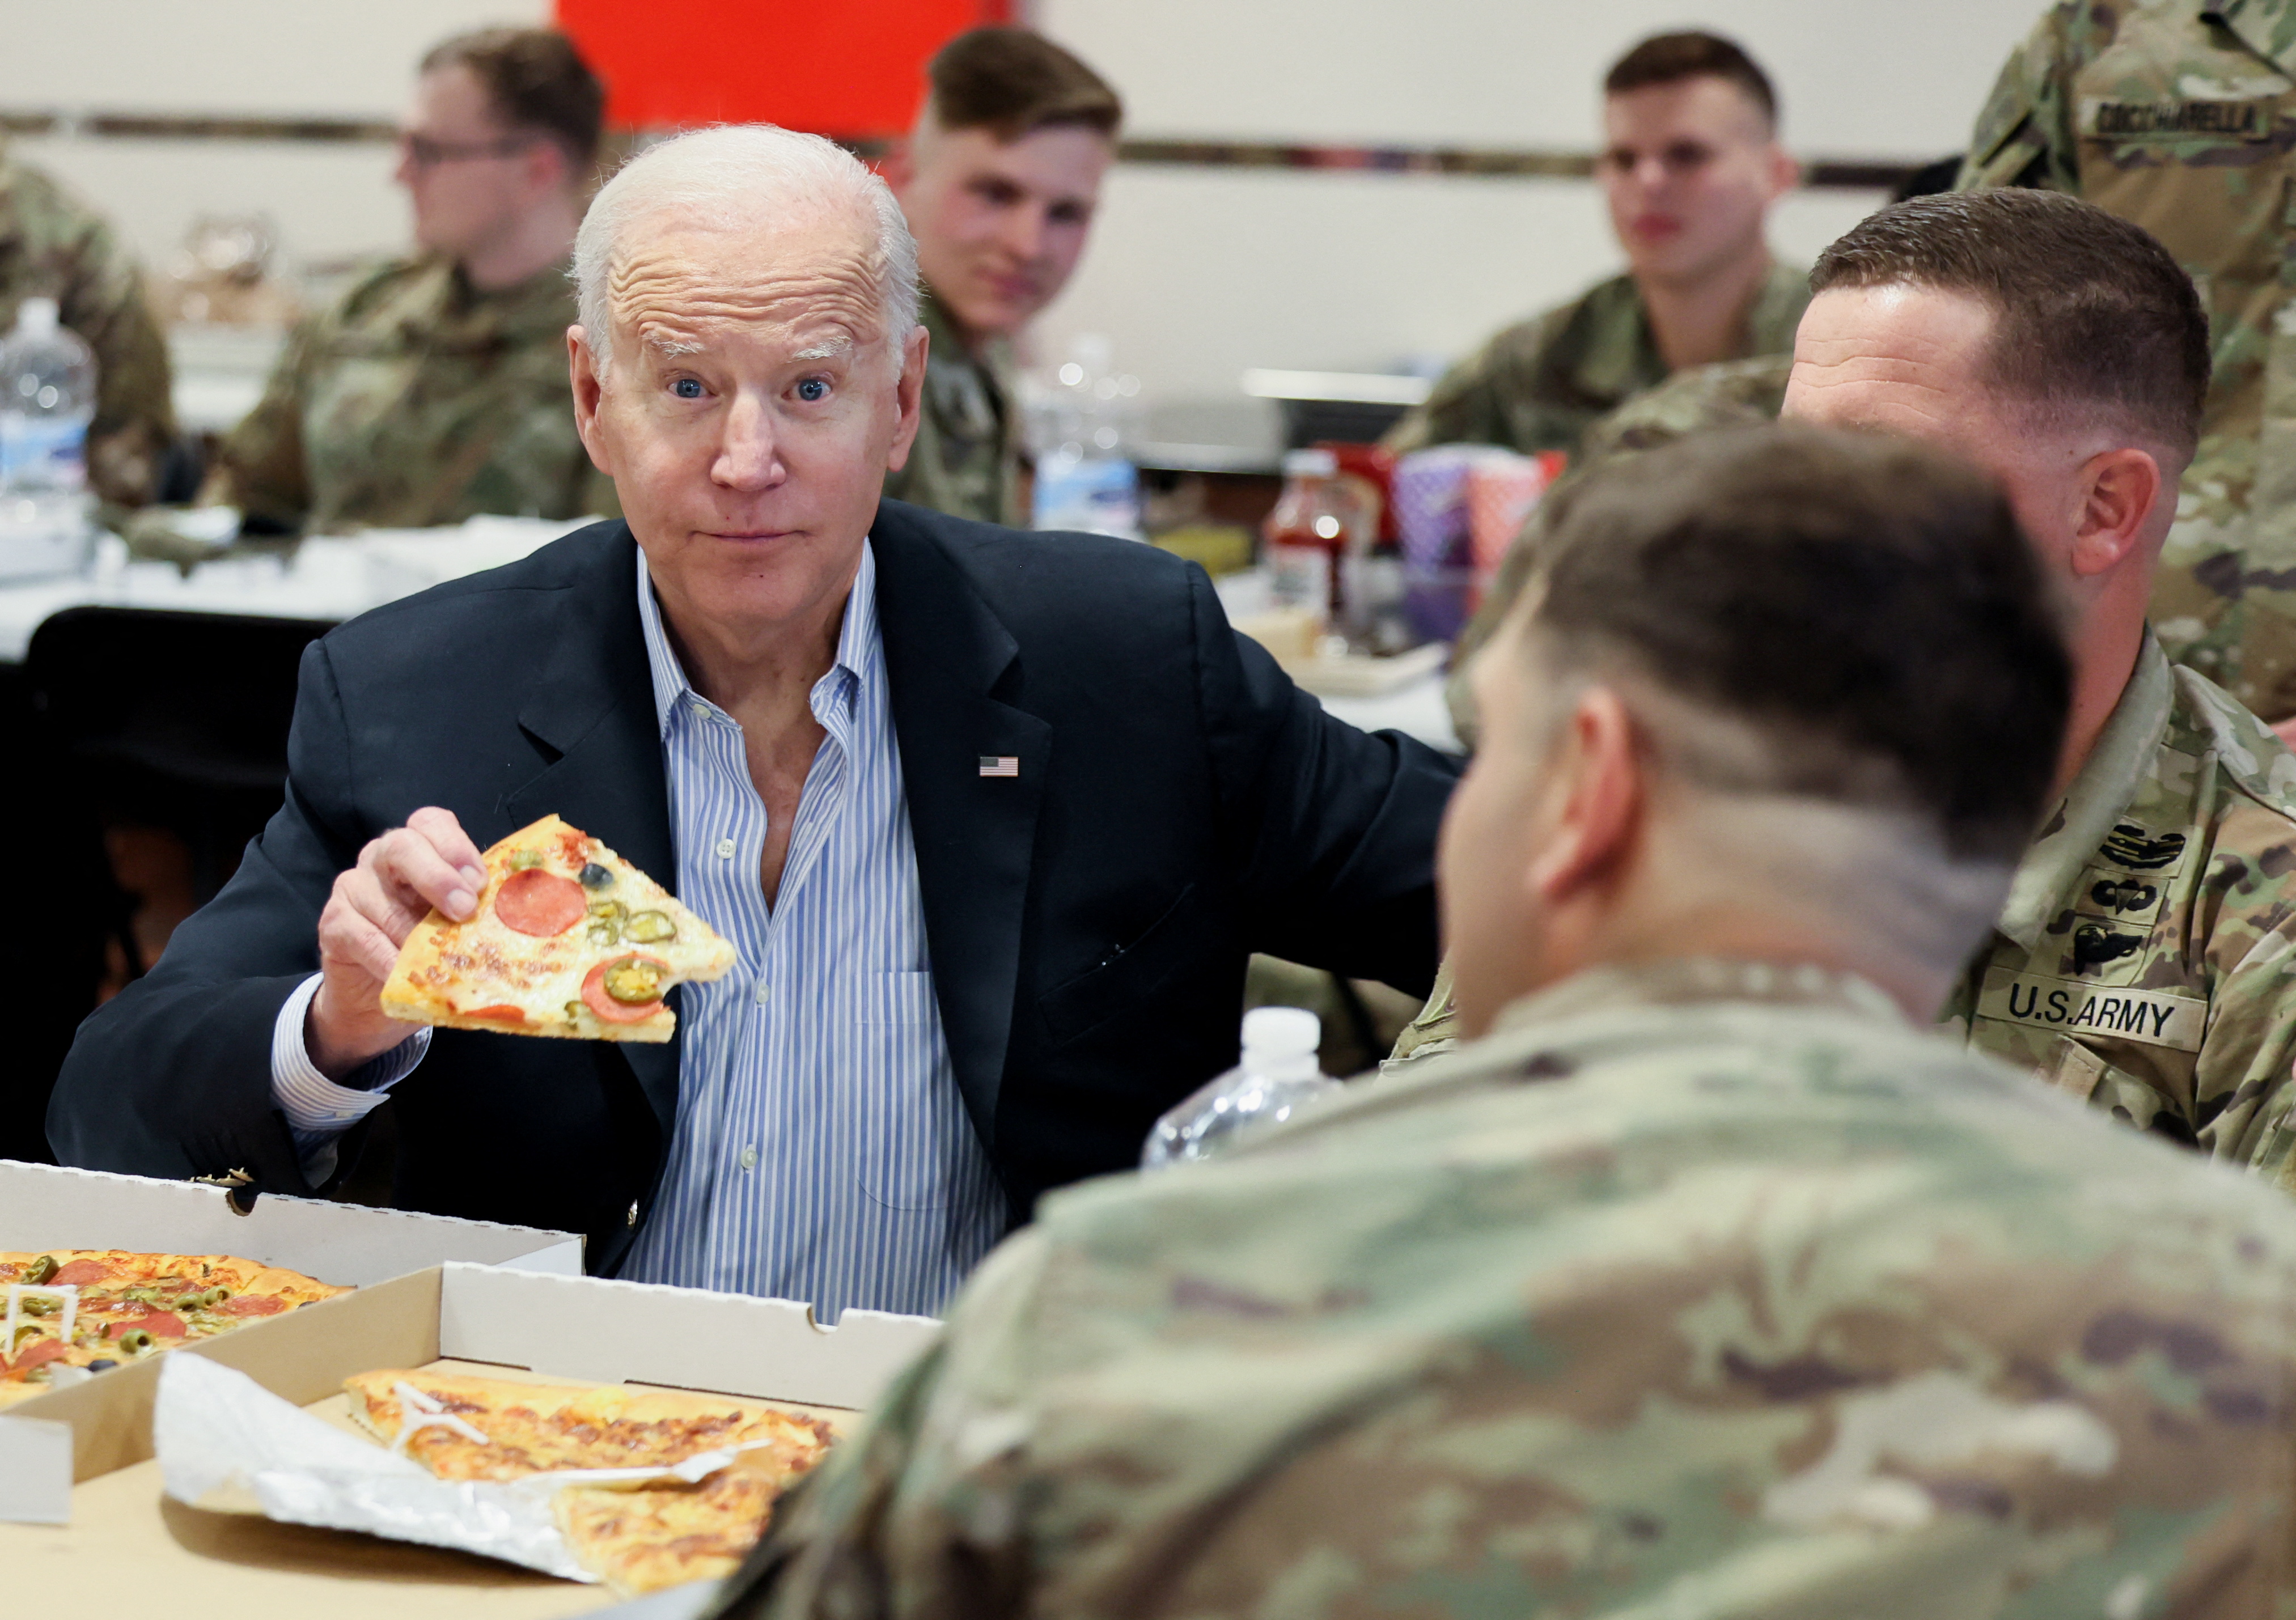 Joe Biden compartiendo una comida con los soldados (REUTERS/Evelyn Hockstein)